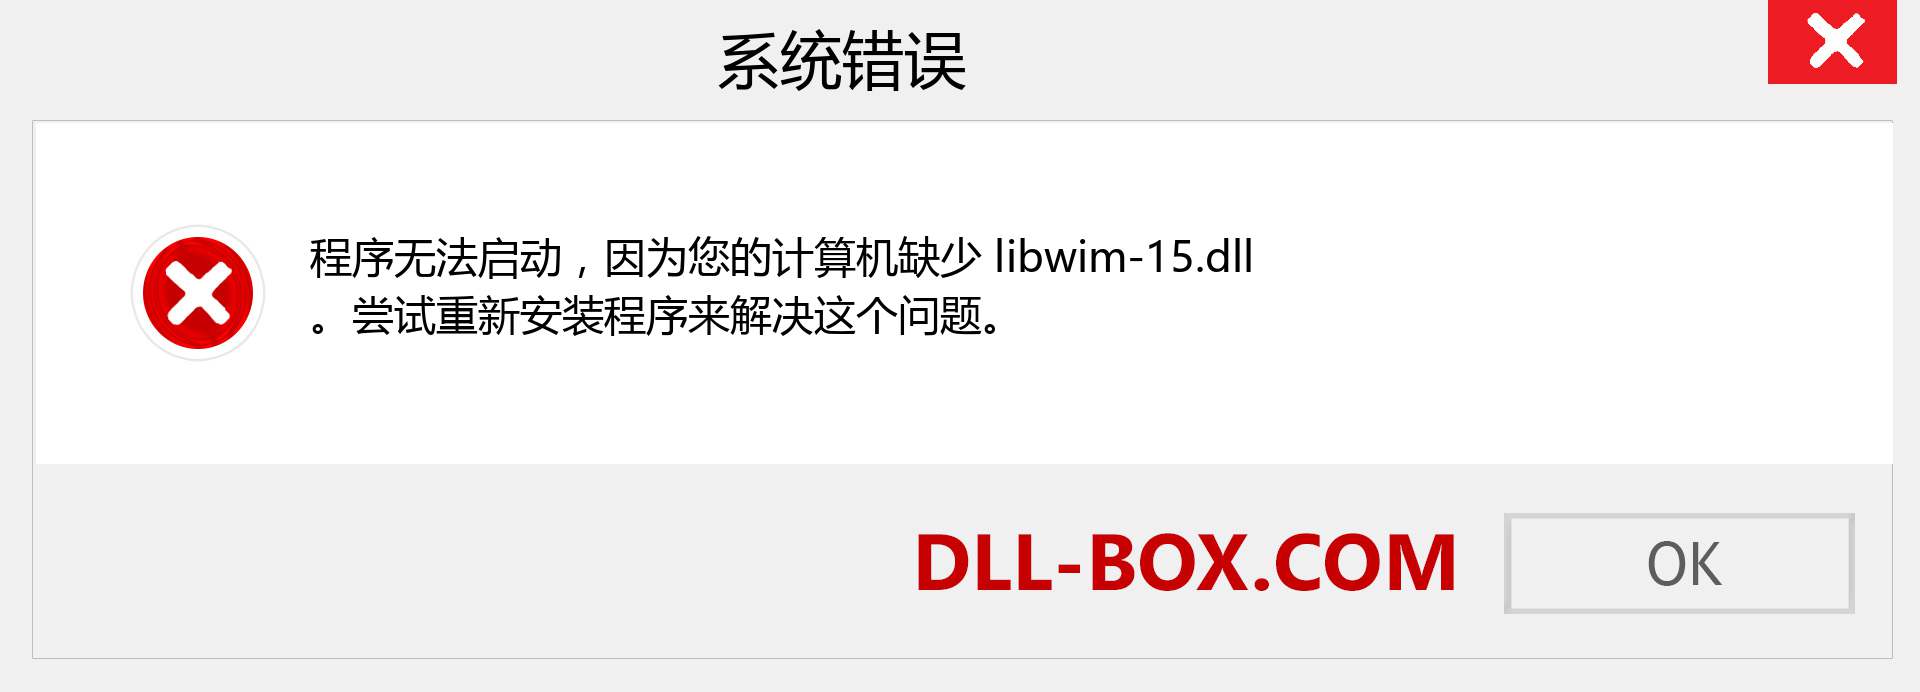 libwim-15.dll 文件丢失？。 适用于 Windows 7、8、10 的下载 - 修复 Windows、照片、图像上的 libwim-15 dll 丢失错误